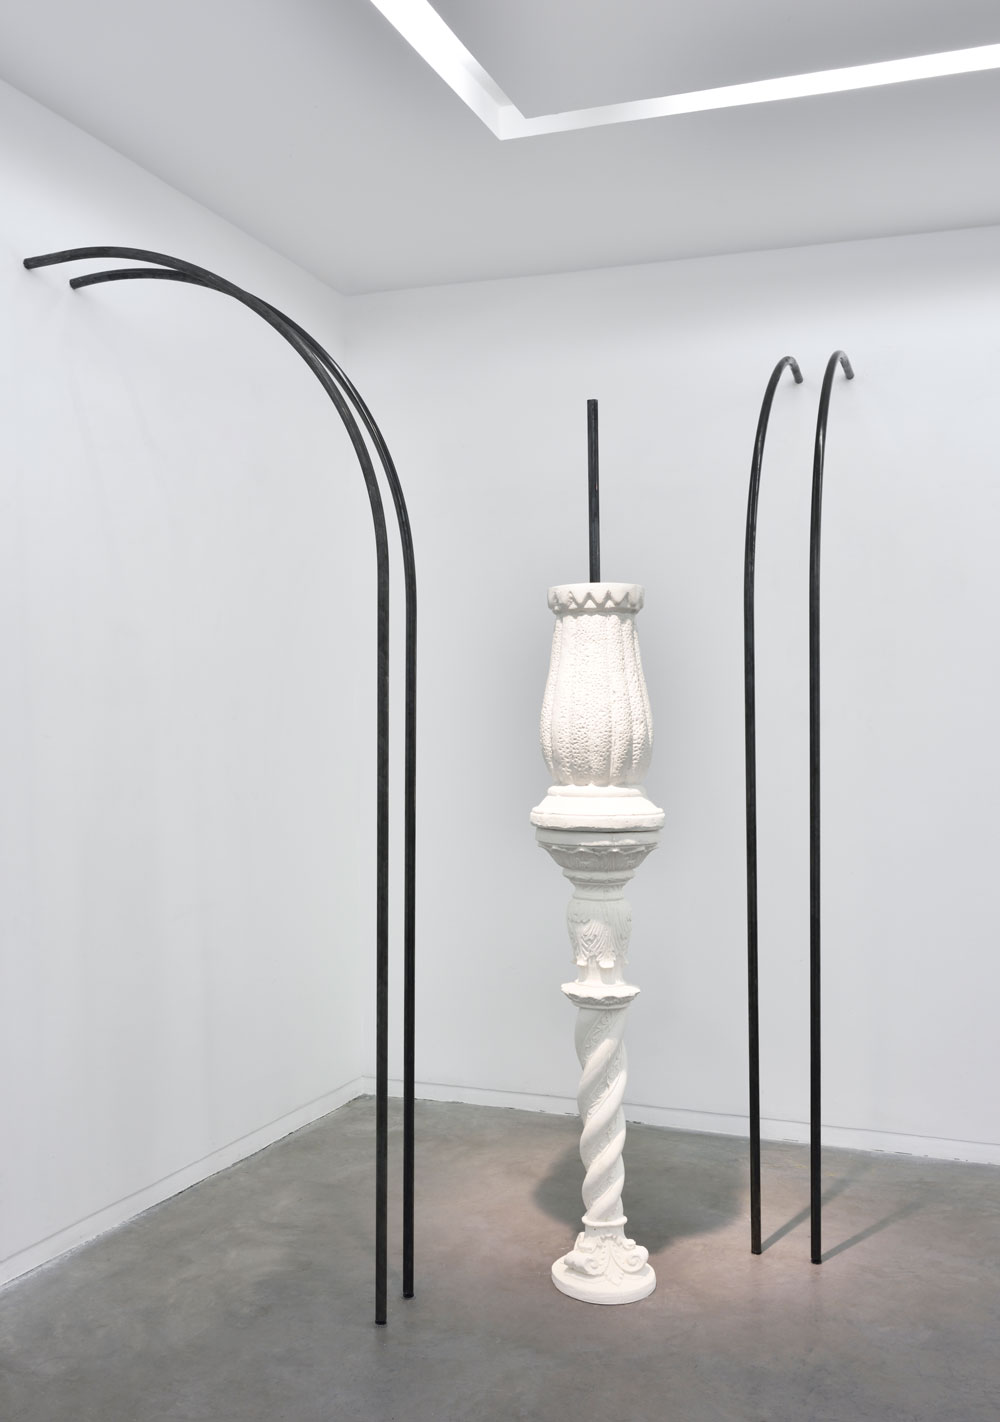 Cyril Zarcone, Assemblages en arche, 2019, poudre de marbre, métal, dimensions variables